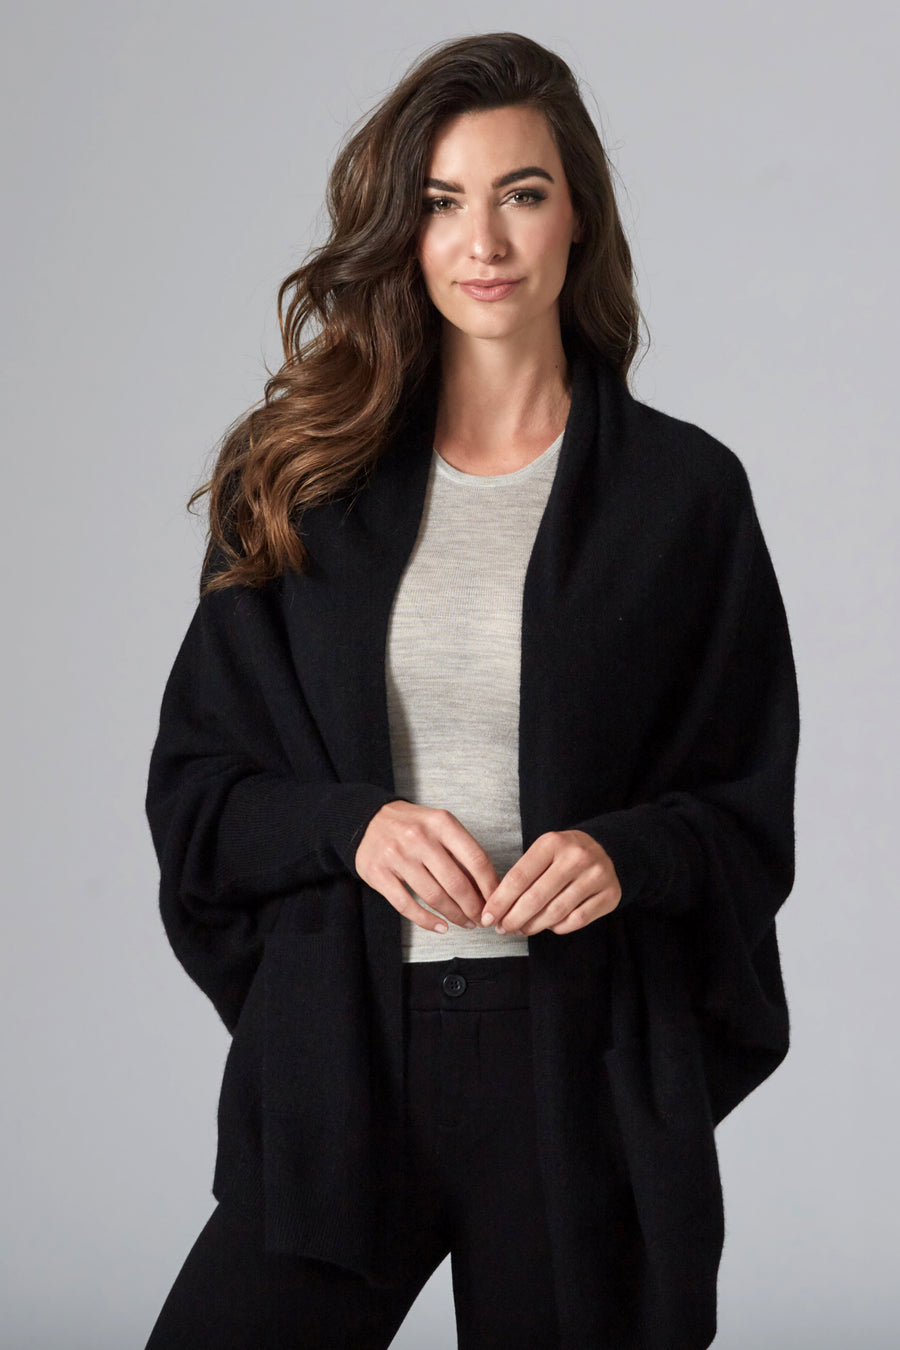 pine cashmere women's audrey multi wear 100% pure cashmere cardigan wrap black color